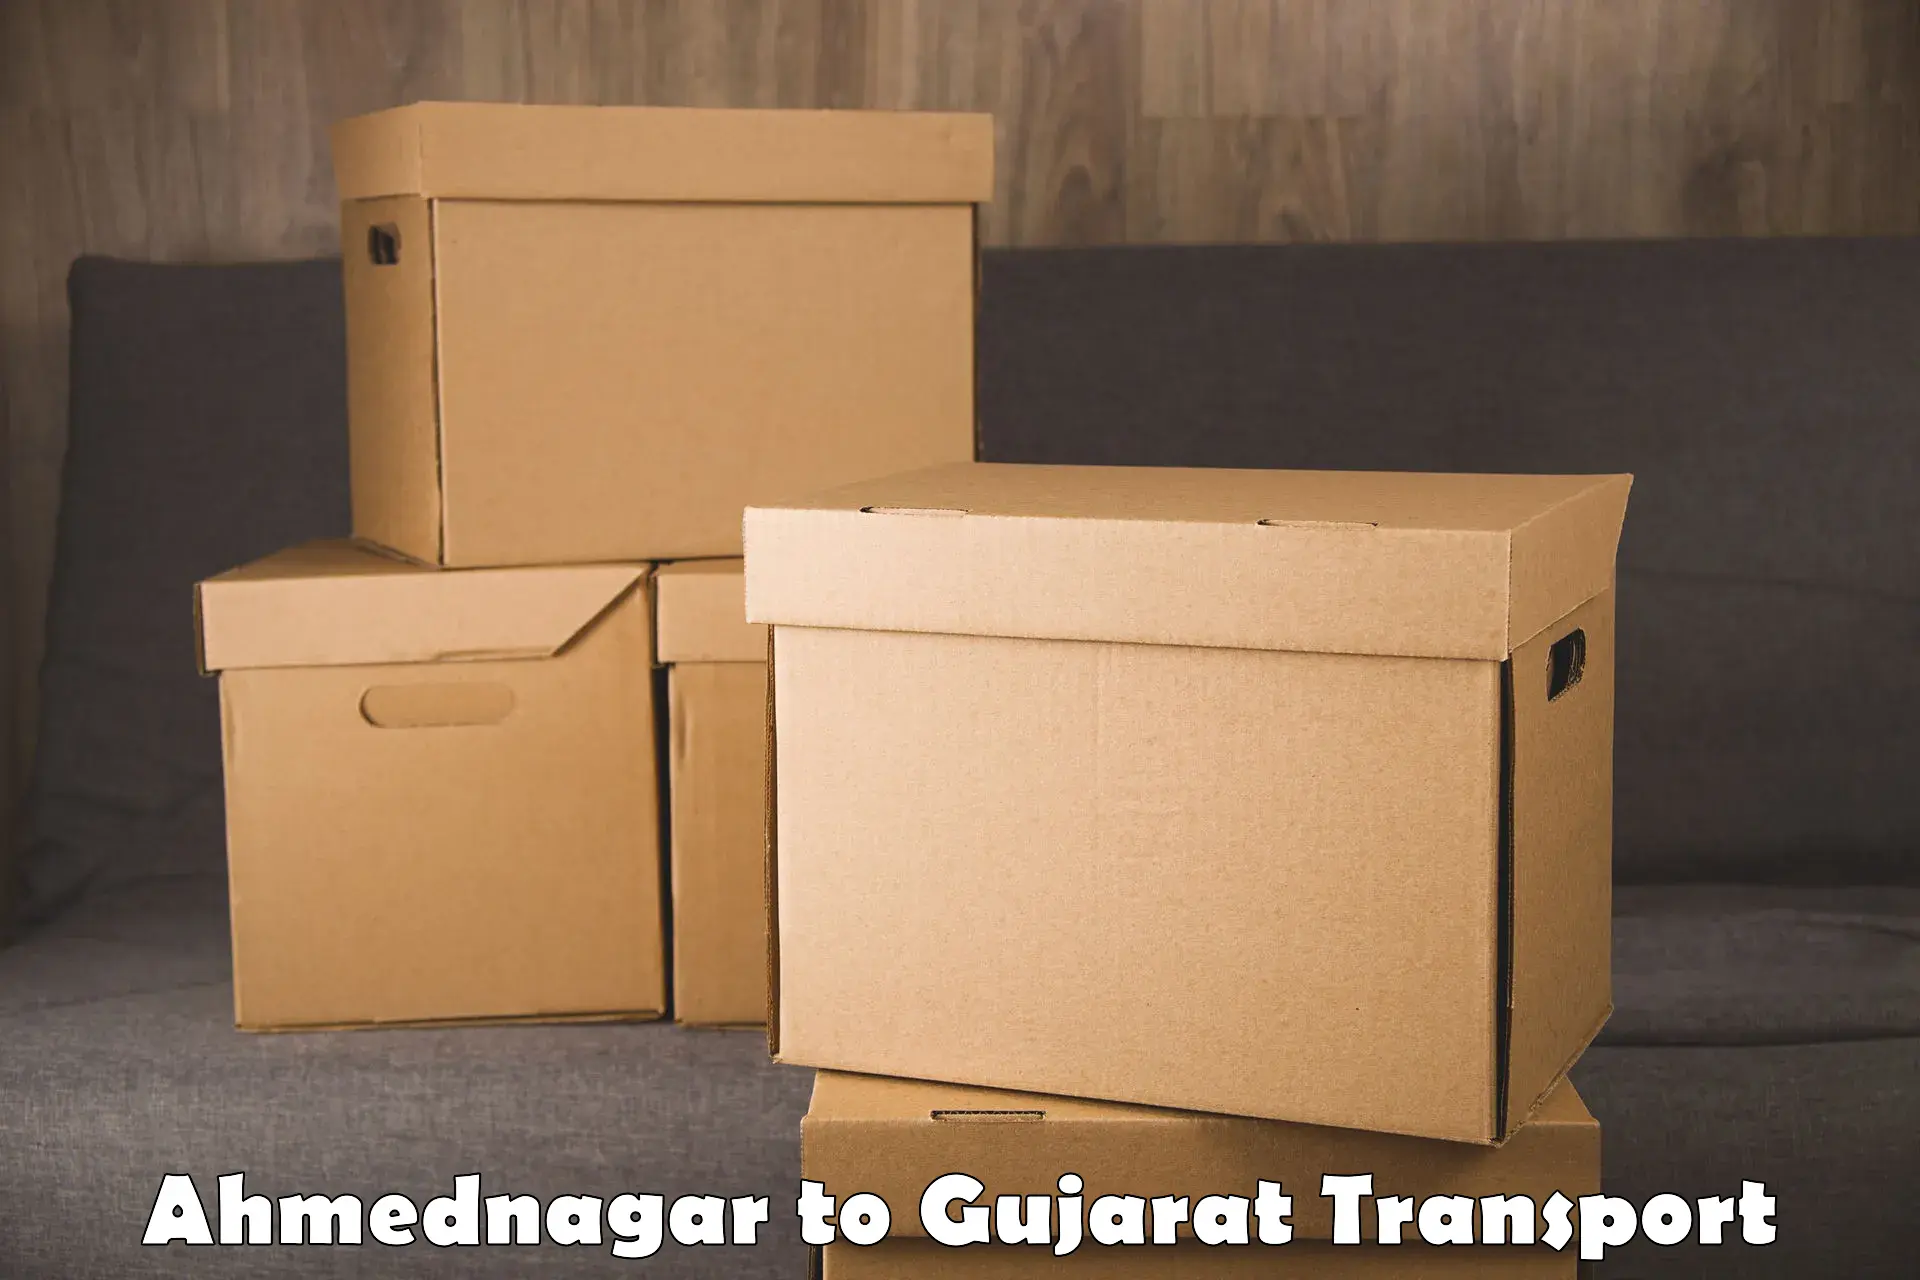 Transport shared services in Ahmednagar to Gandhinagar